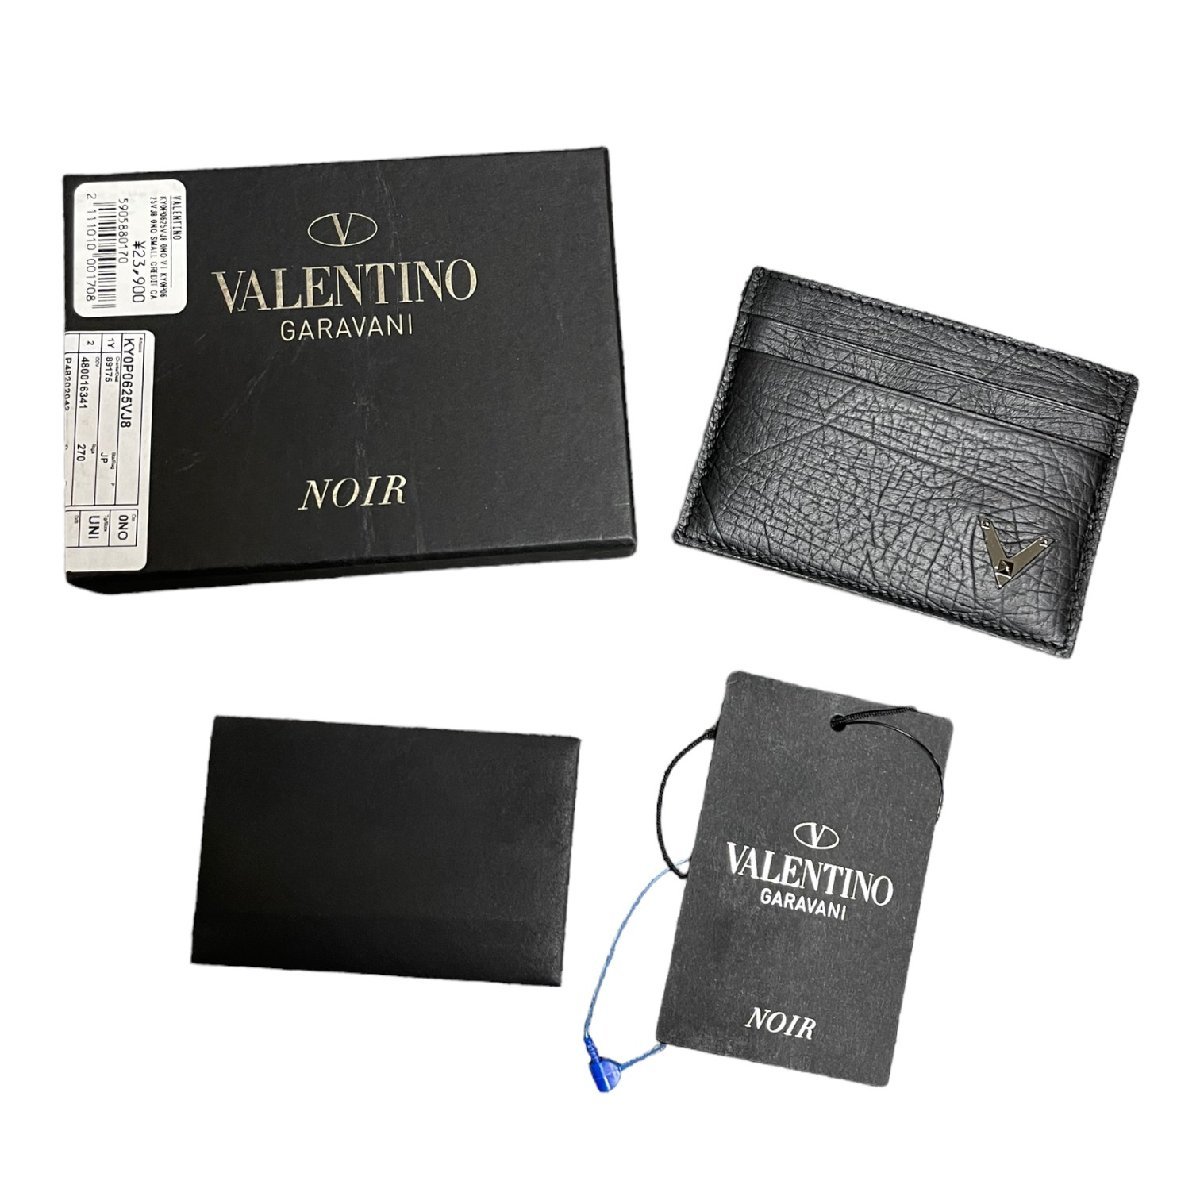 【未使用】 VALENTINO GARAVANI ヴァレンティノガラバーニ NOIR カードケース 名刺入れ ブラック メンズ 箱有 N10-328RK_画像1